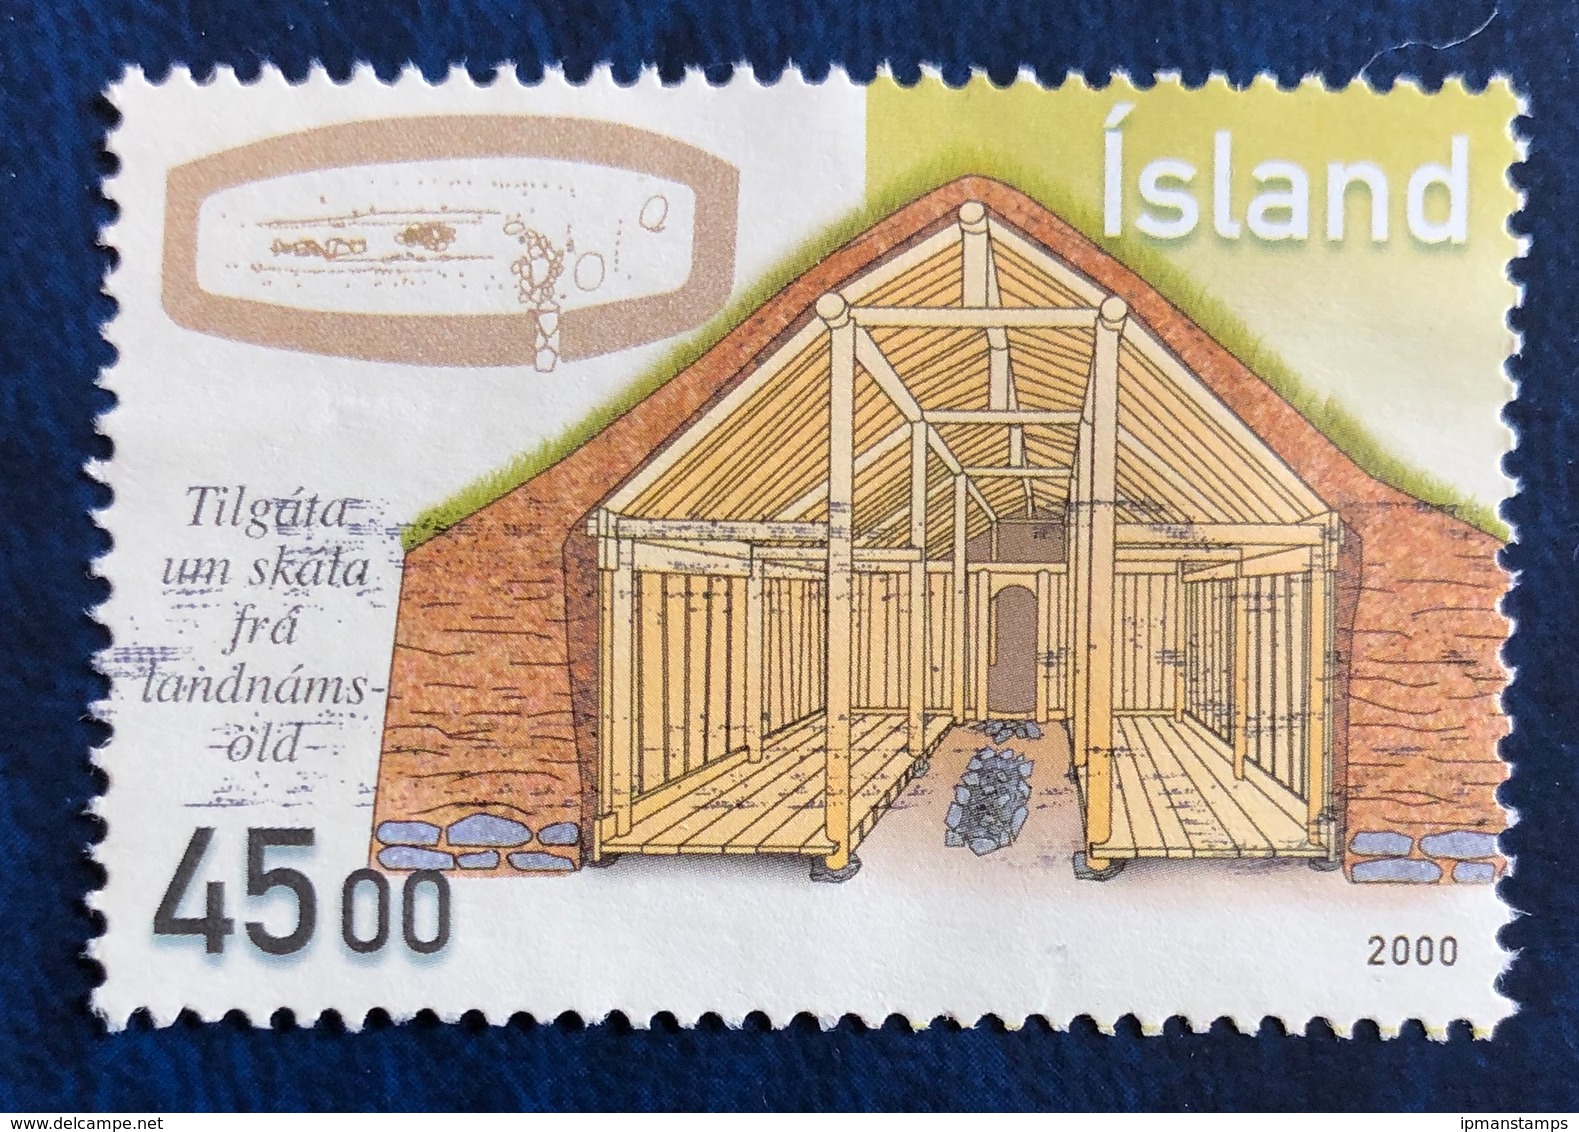 Architettura: Abitazioni Islandesi Di Epoca Vichinga - Architecture: Houses Of The Viking Era - Gebruikt